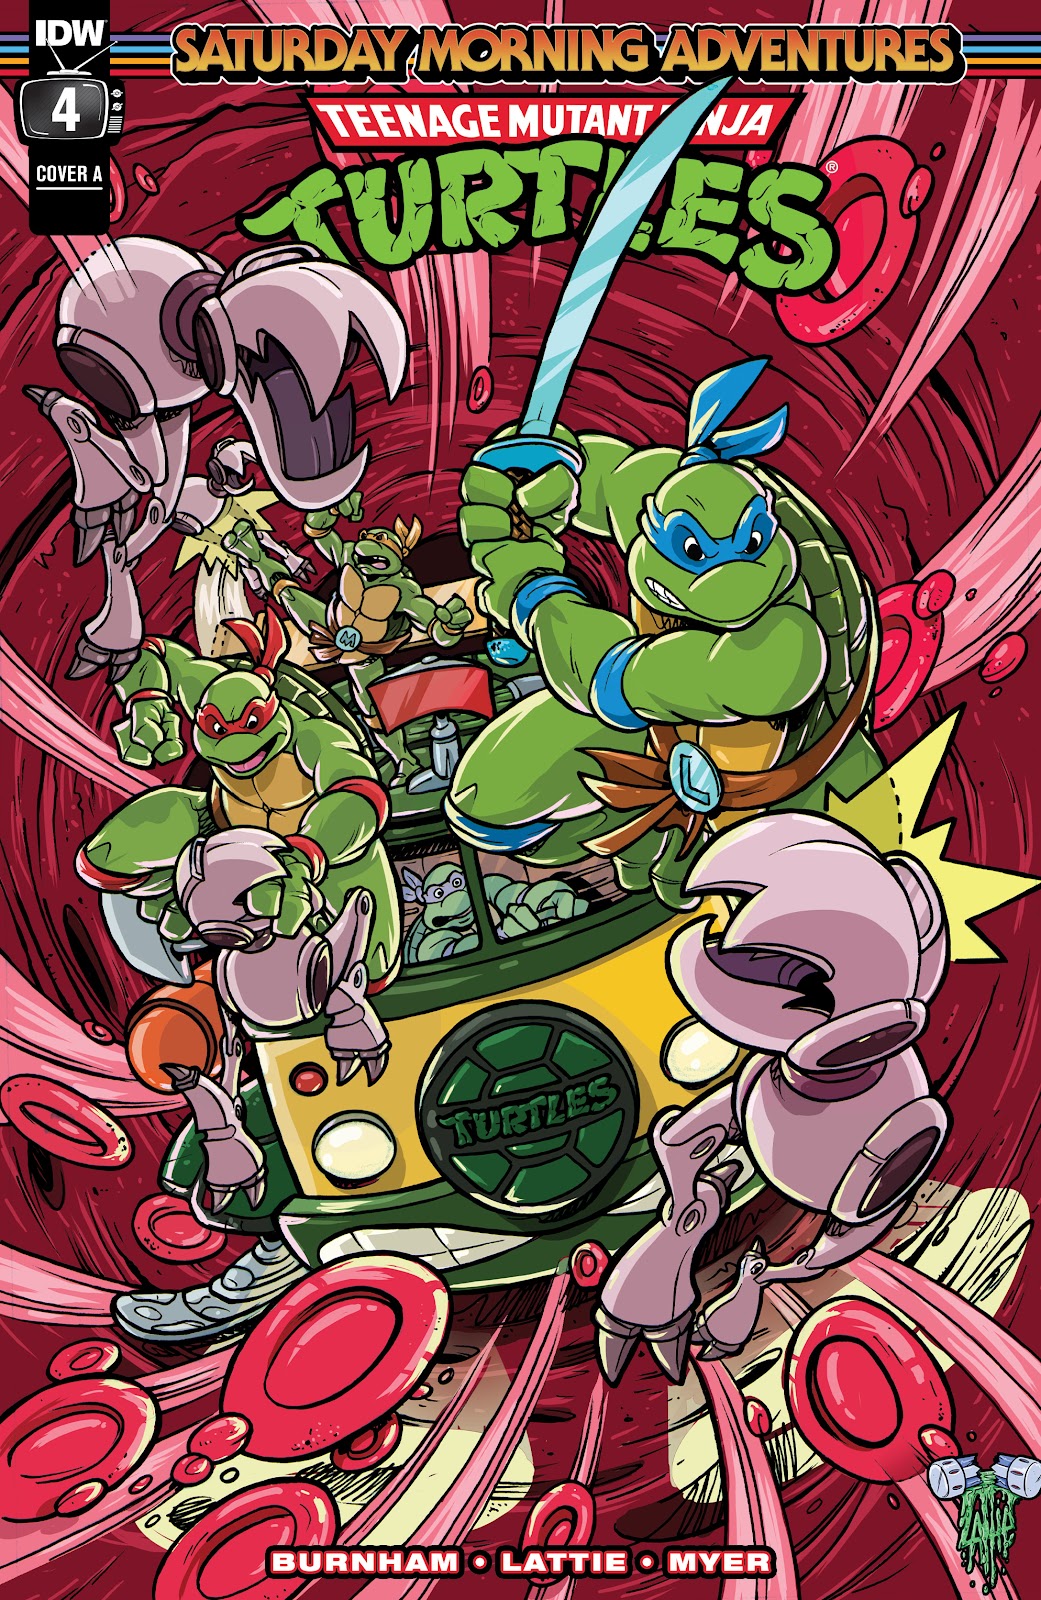 Teenage Mutant Ninja Turtles: Saturday Morning Adventures issue 4 - Page 1